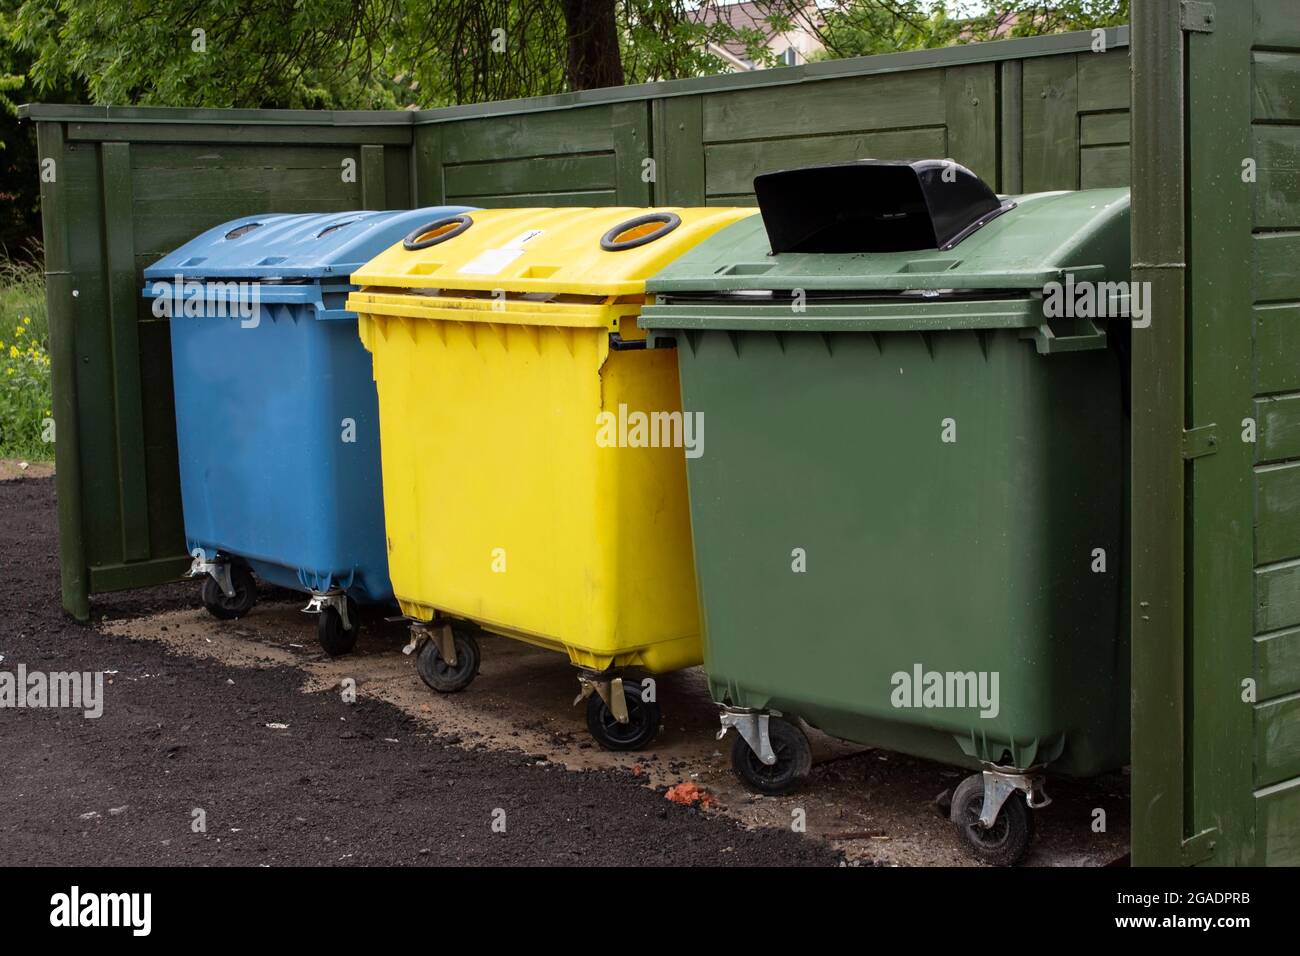 Trois conteneurs en plastique de plusieurs couleurs avec déchets près de la clôture. Collecte séparée des déchets ménagers. Attitude responsable envers l'environnement. Banque D'Images